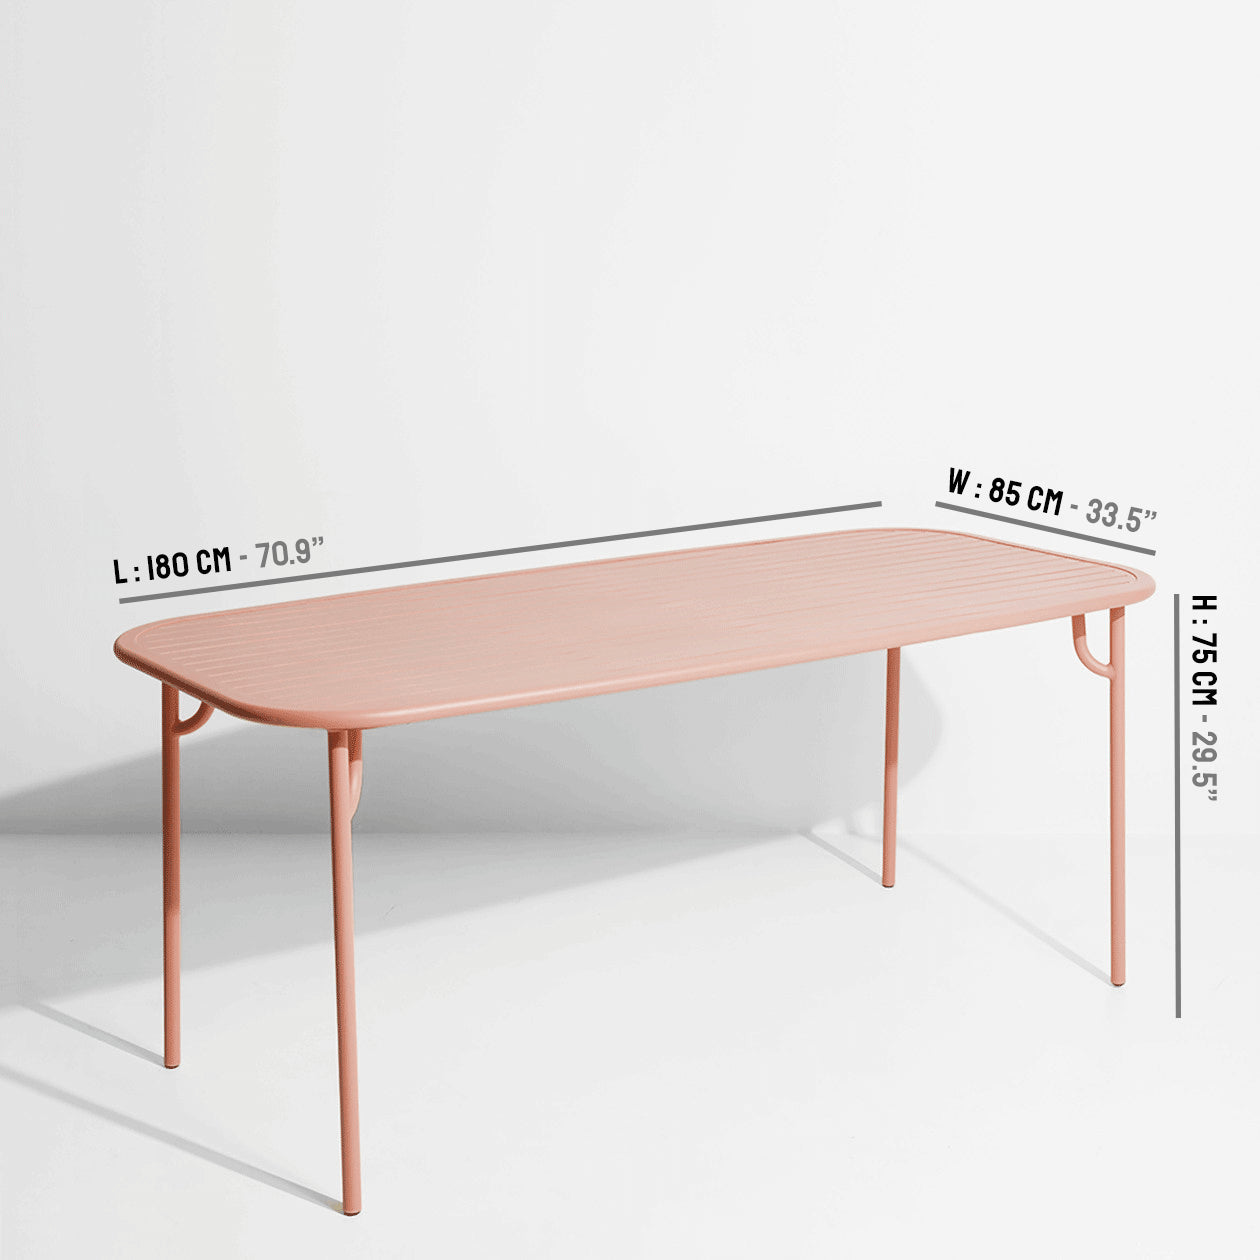 Week-End Tisch Medium in Blush präsentiert im Onlineshop von KAQTU Design AG. Gartentisch ist von Petite Friture